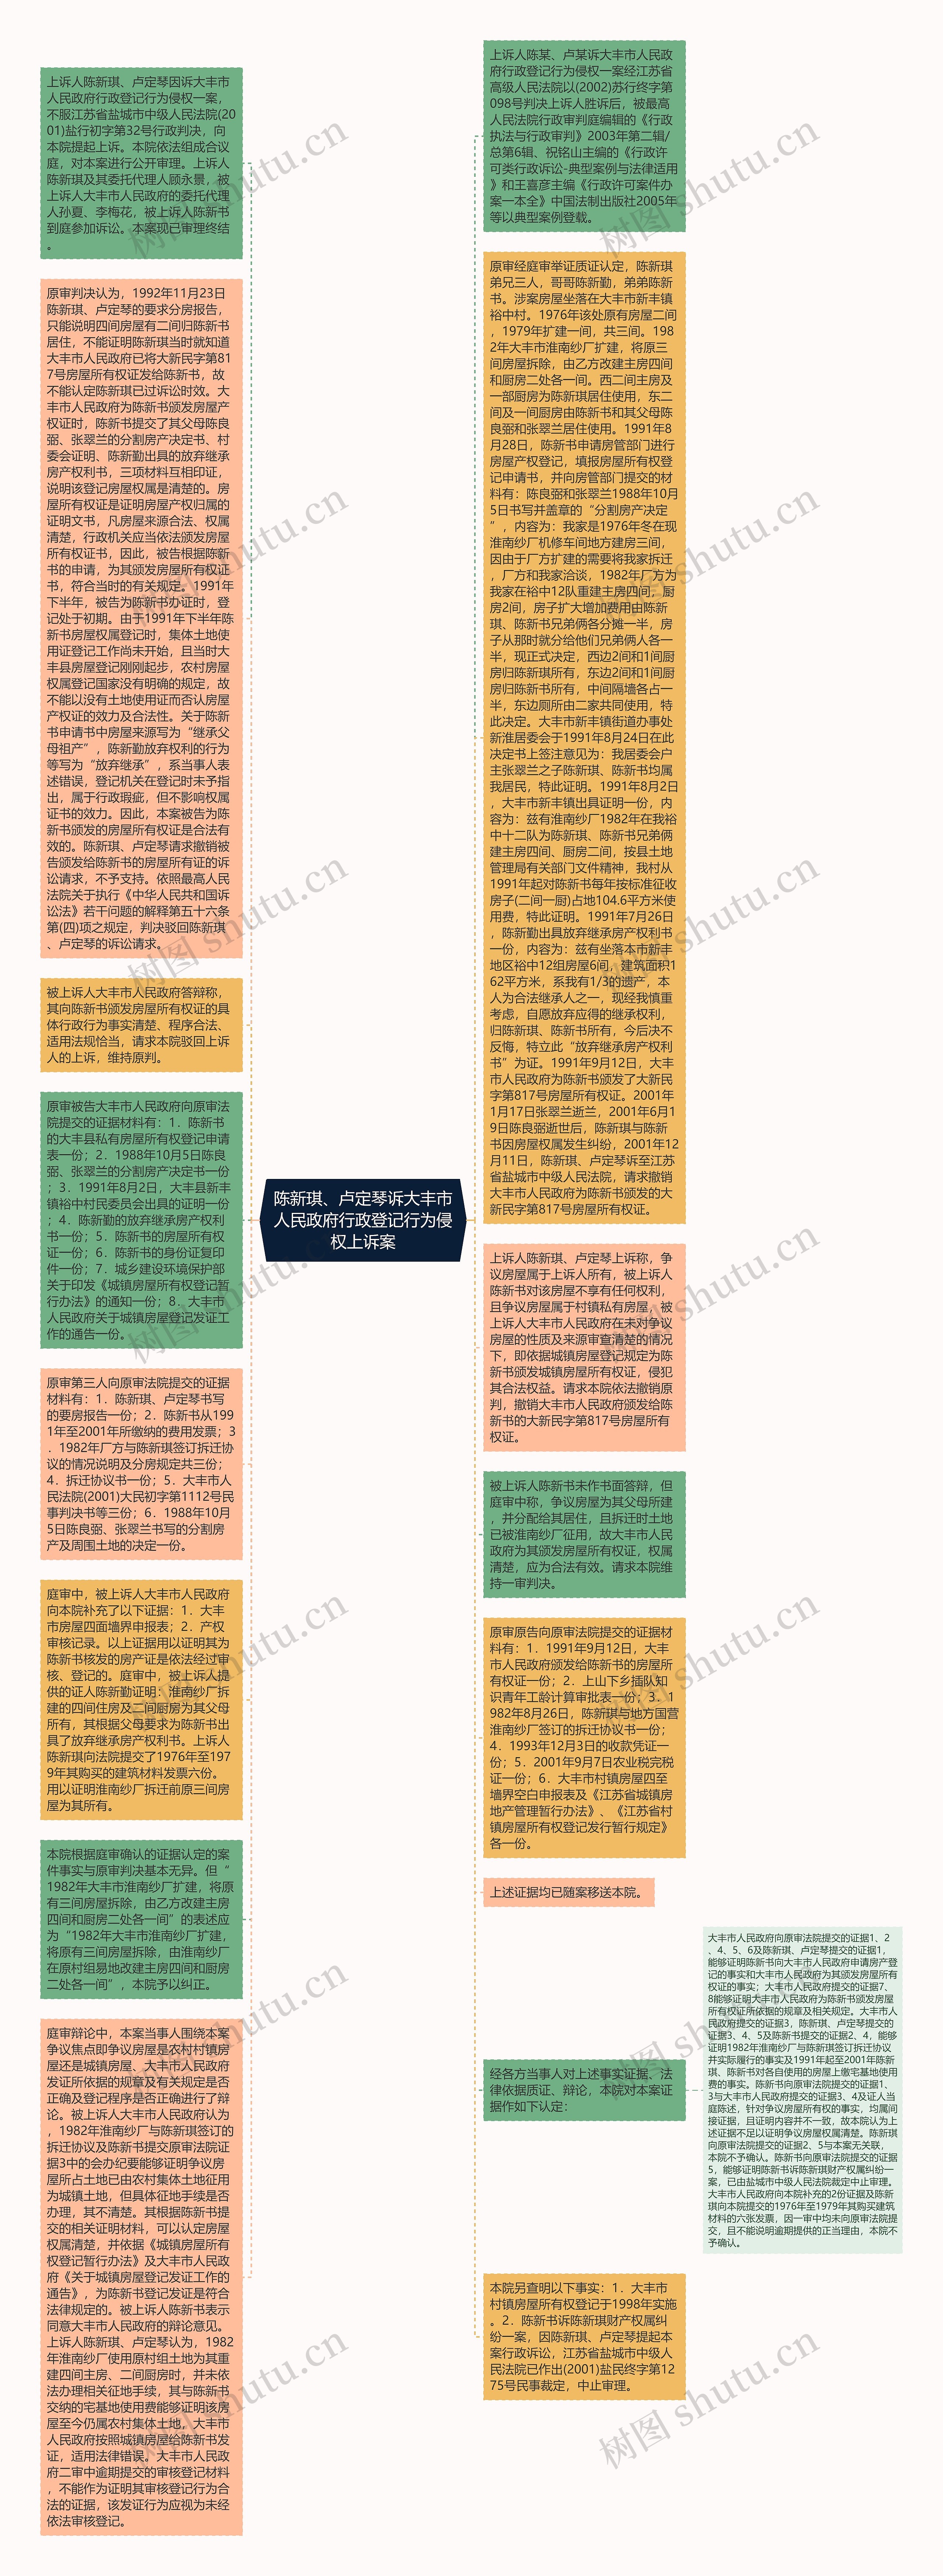 陈新琪、卢定琴诉大丰市人民政府行政登记行为侵权上诉案